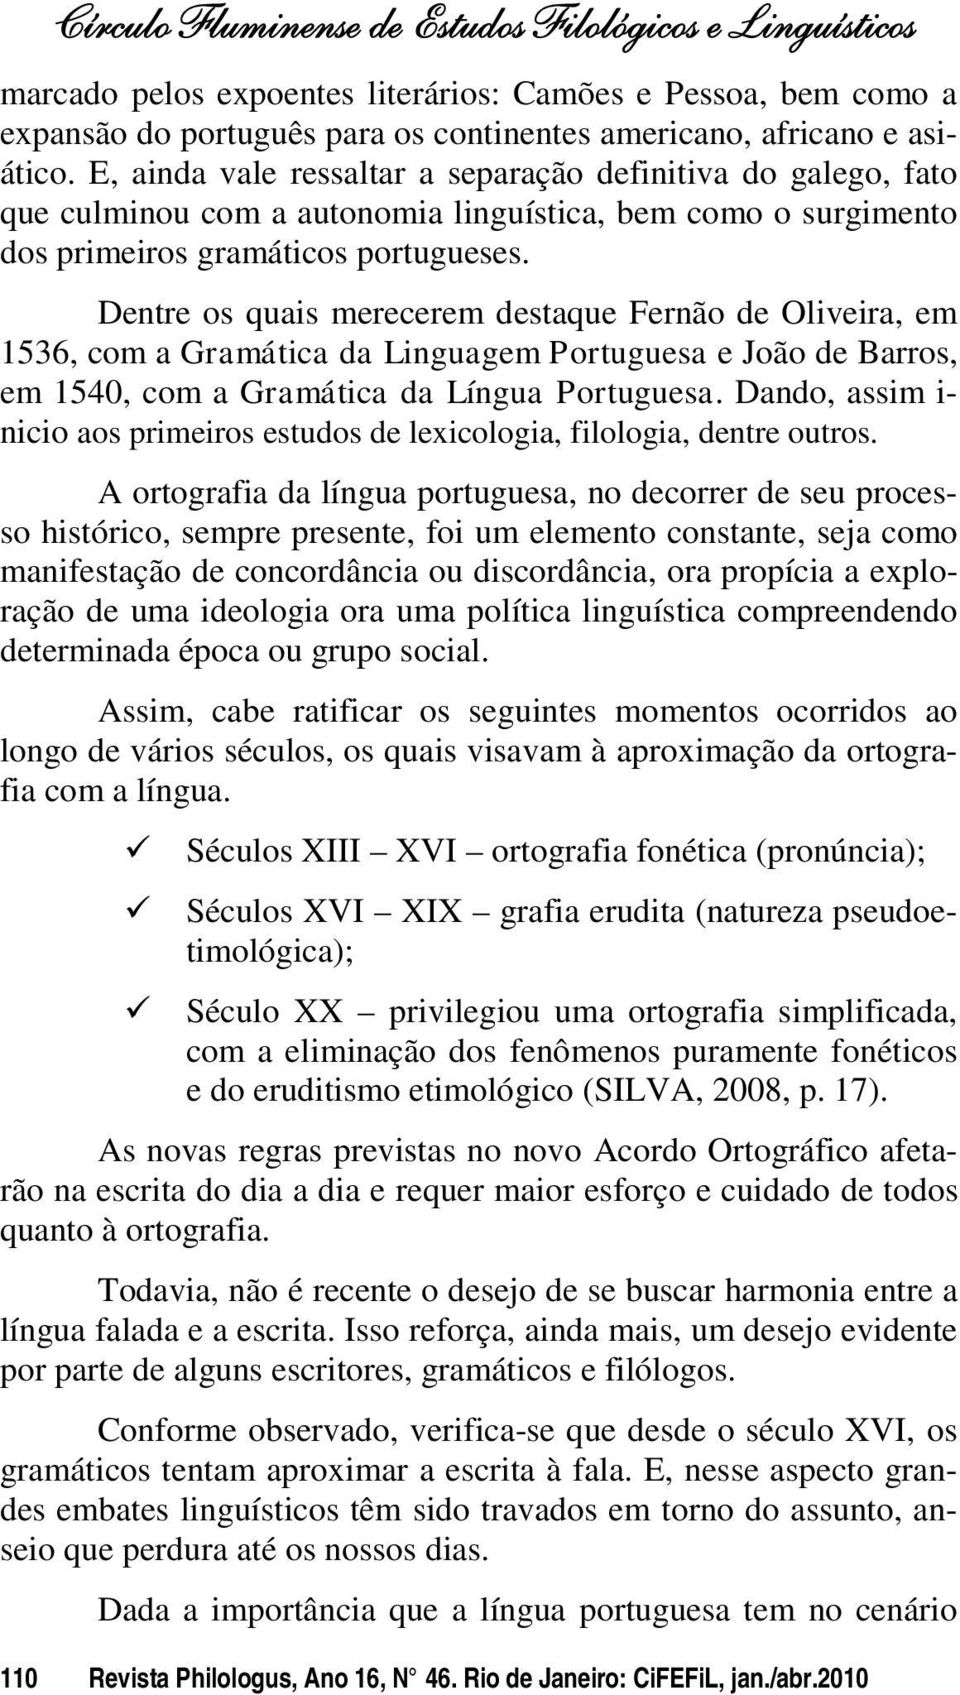 Dentre os quais merecerem destaque Fernão de Oliveira, em 1536, com a Gramática da Linguagem Portuguesa e João de Barros, em 1540, com a Gramática da Língua Portuguesa.